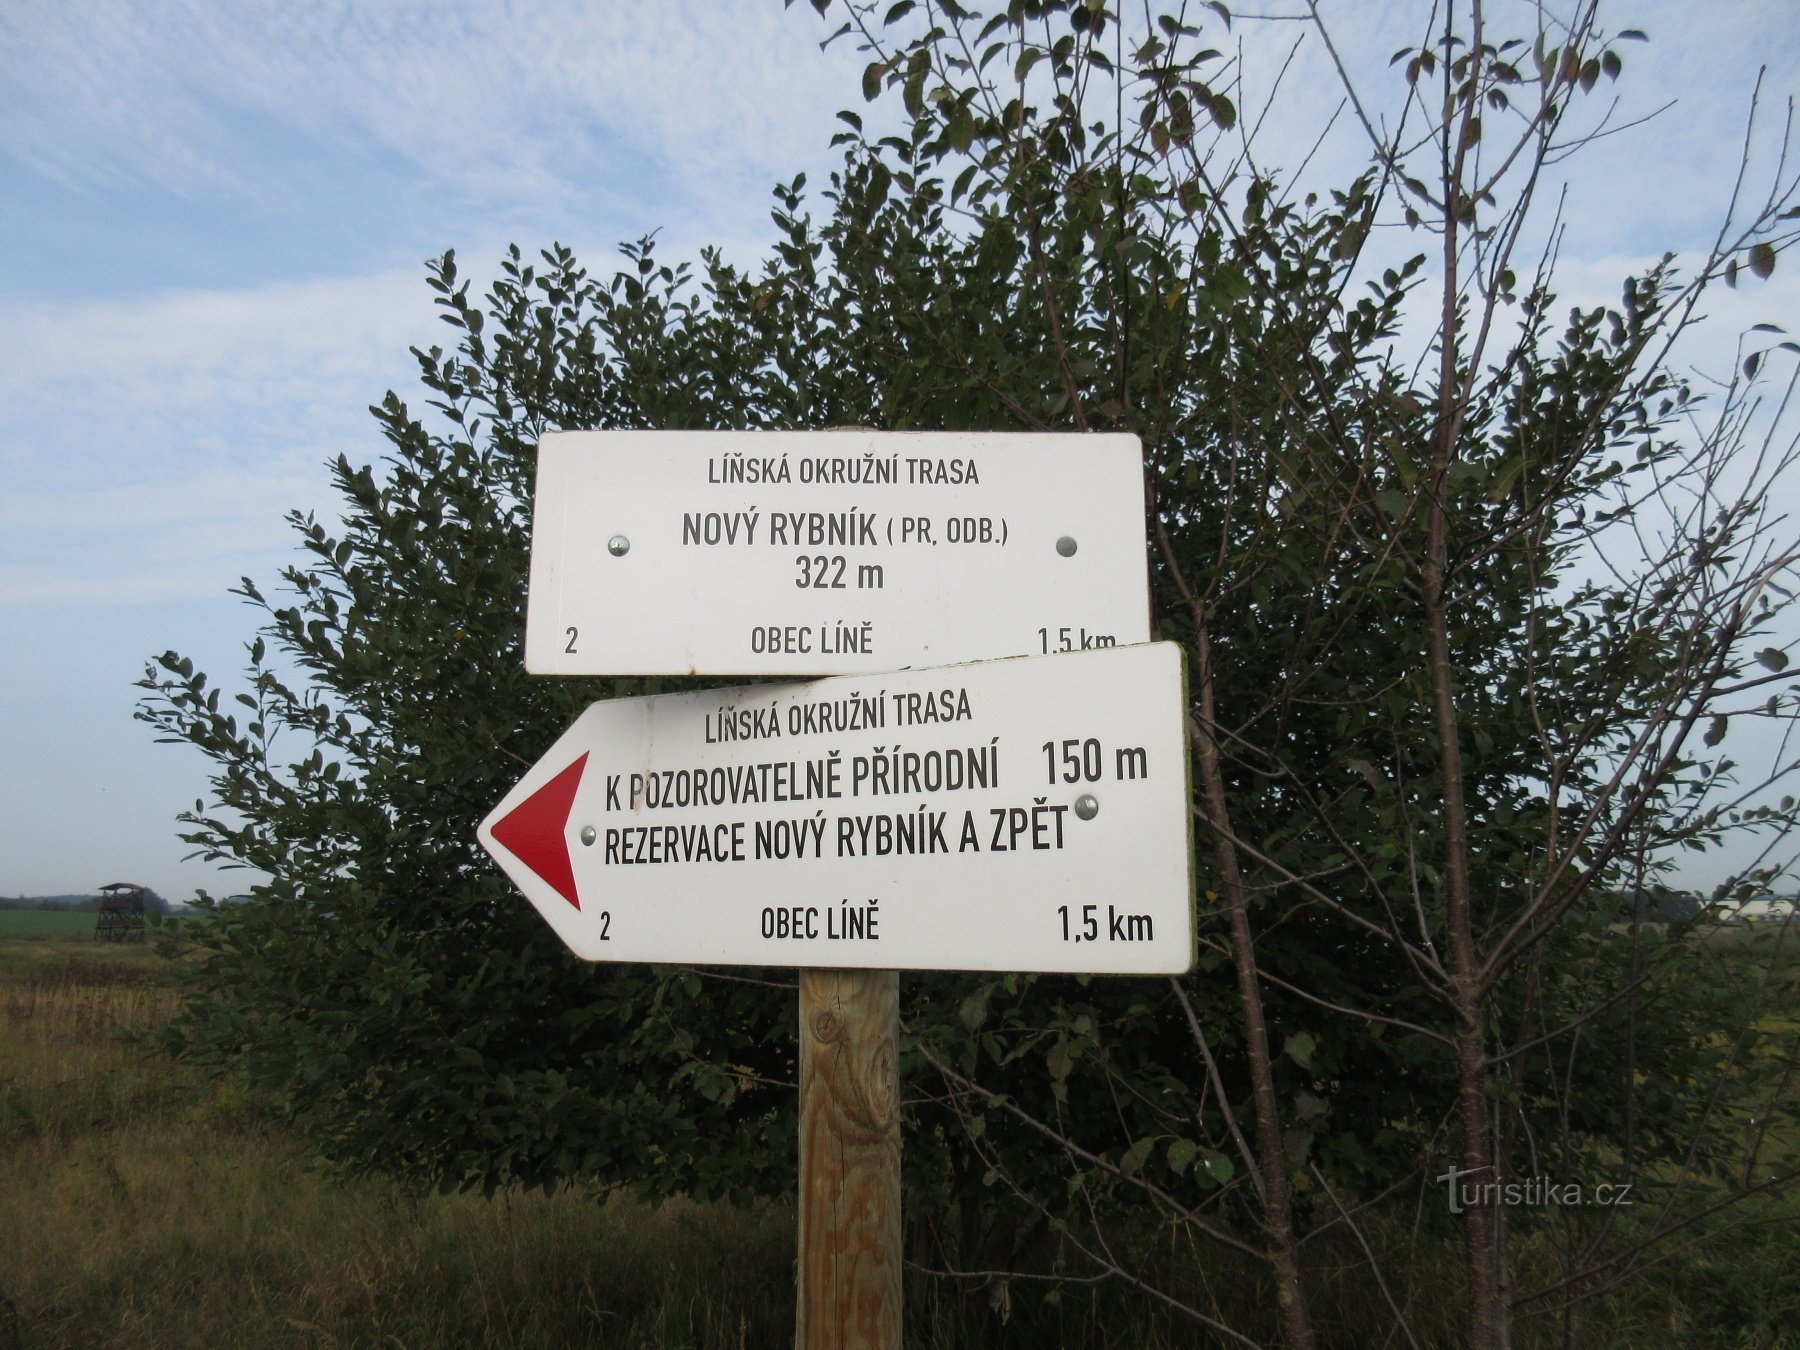 Nový Rybník (Úherce) - nature reserve and bird observatory